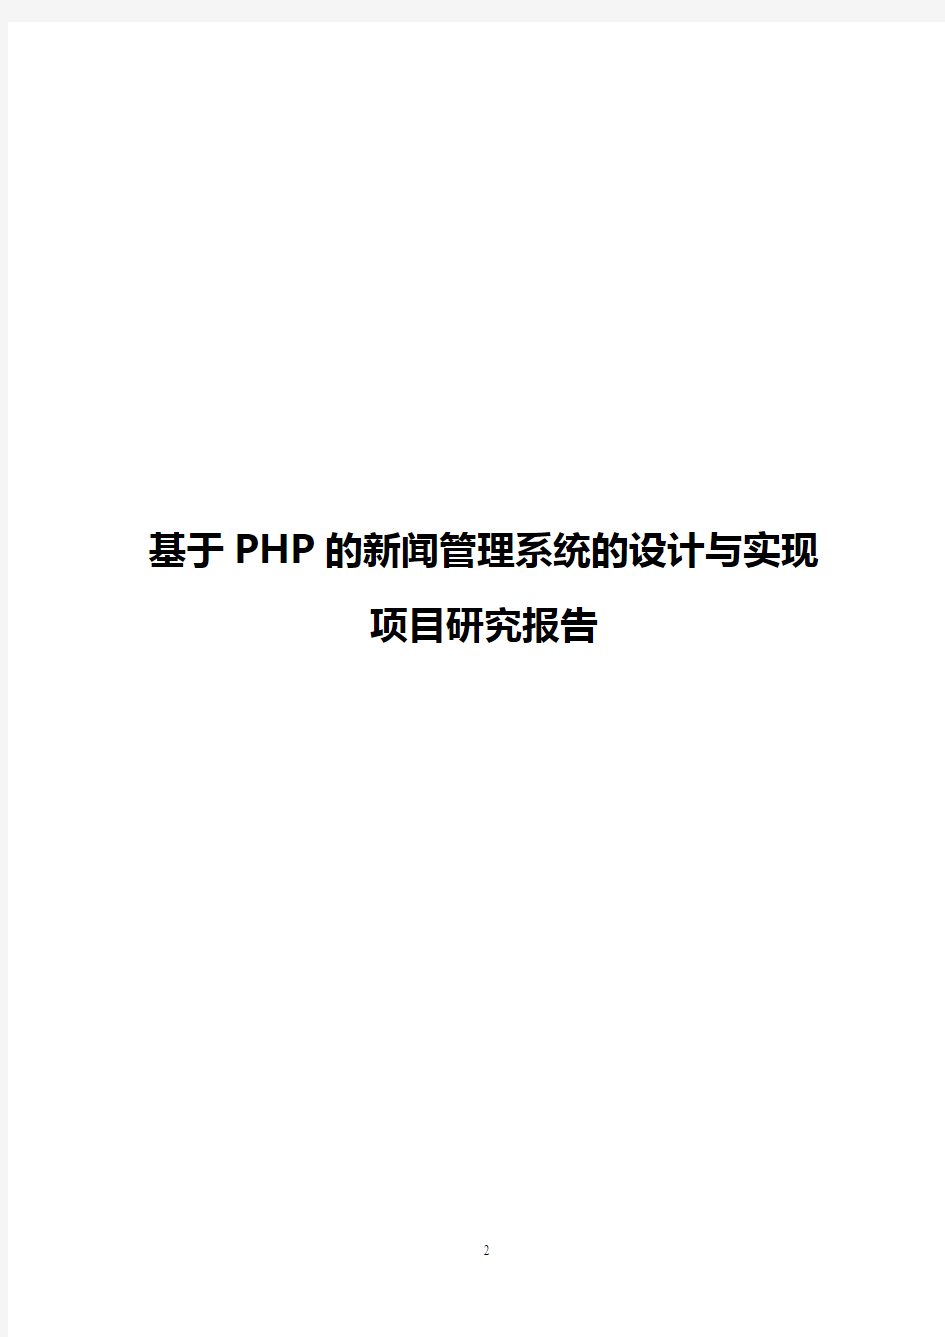 【实用】基于PHP的新闻管理系统的设计与实现项目研究报告